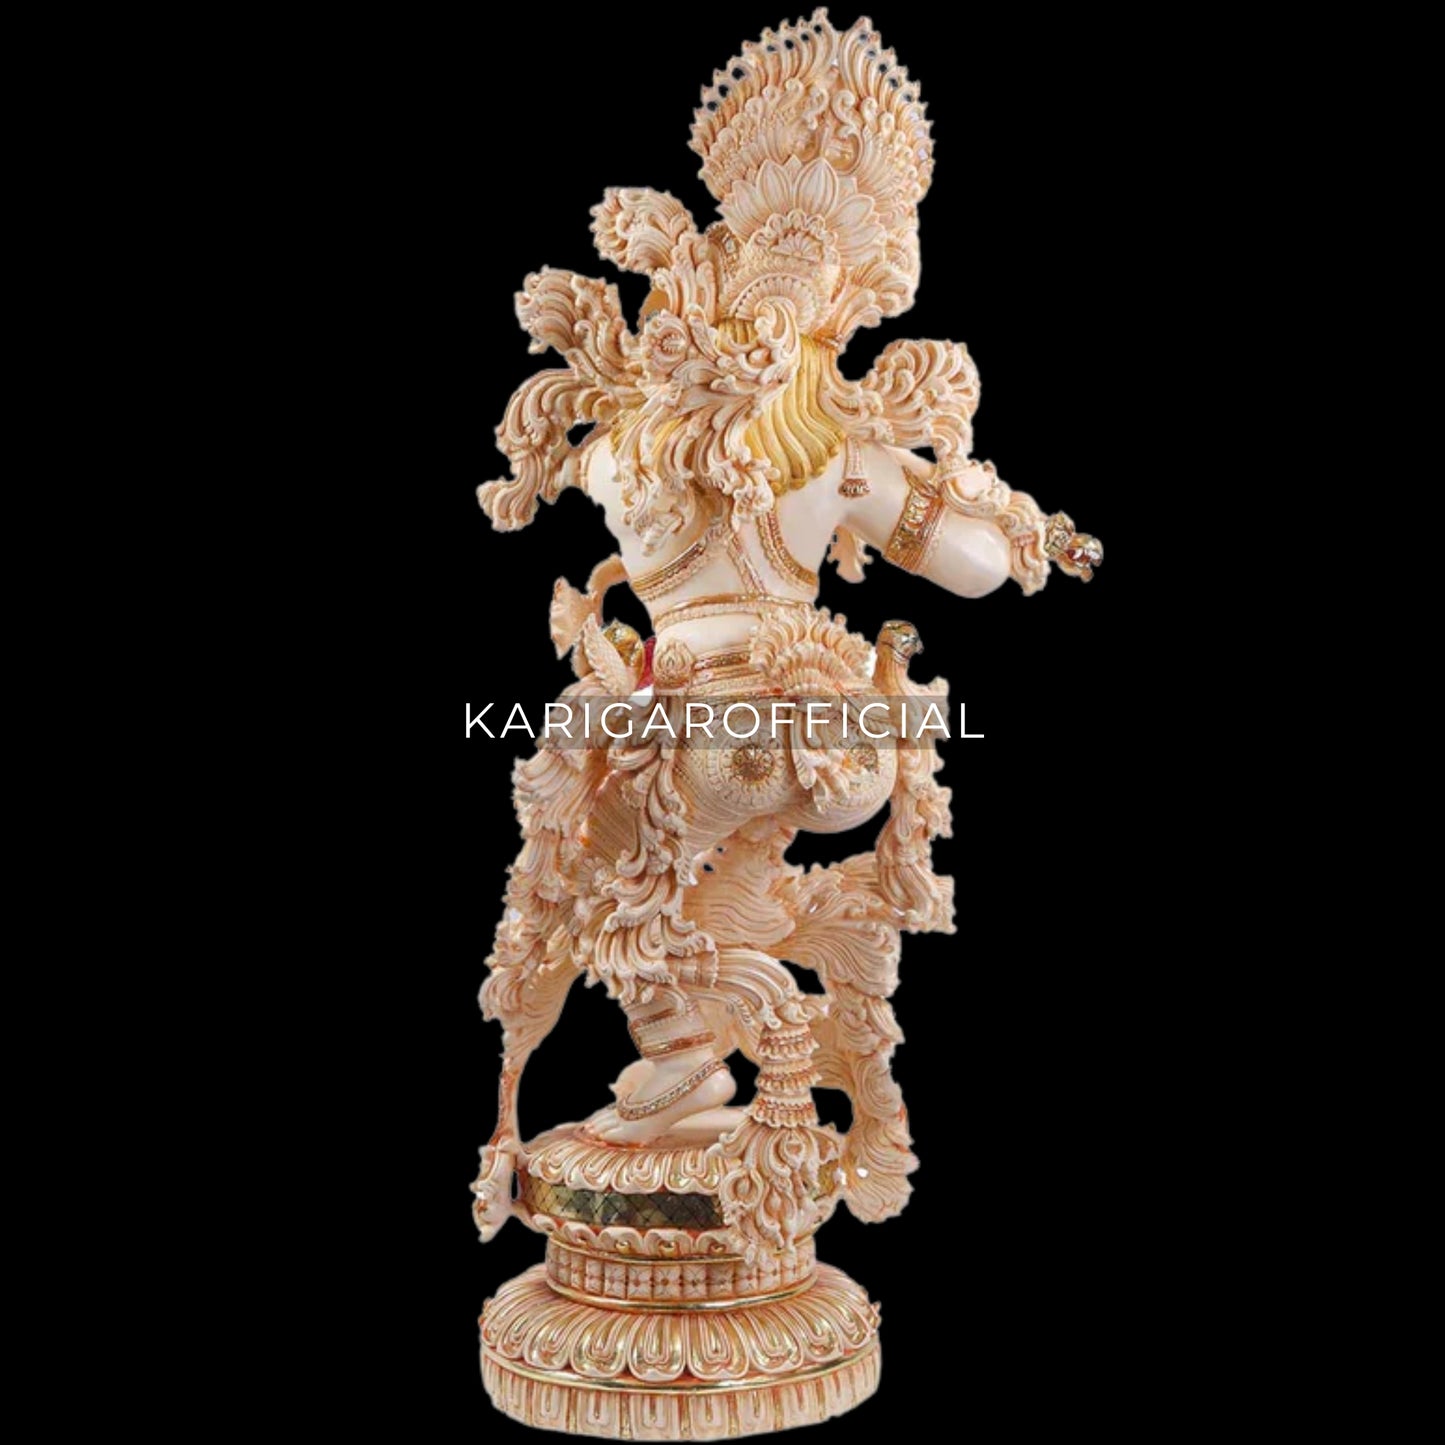 Estatua de Krishna, ídolo de Krishna grande de 43 pulgadas, joyería de piedra con tachuelas de mármol, figura de Krishna, dios hindú pintado a mano Murlimanohar Murti, templo del hogar Pooja inauguración de la casa regalos de aniversario escultura